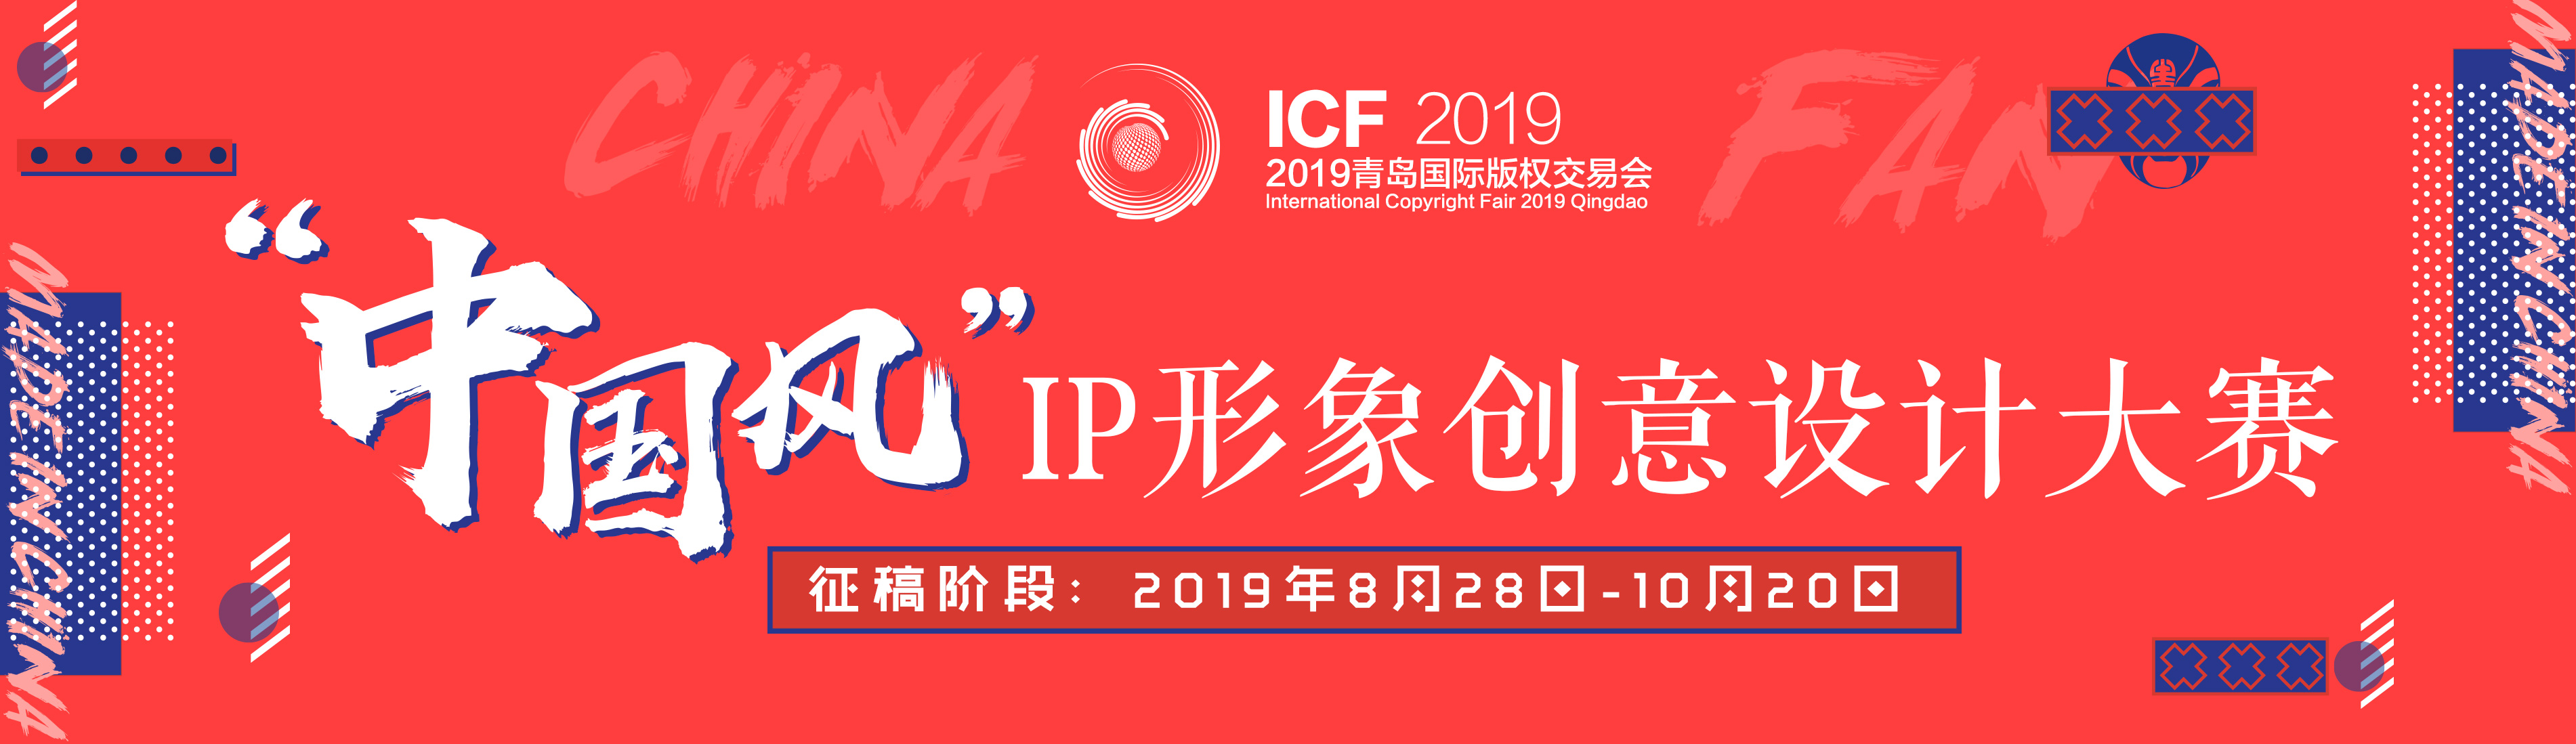 2019青岛国际版权交易会“中国风”IP形象创意设计大赛征集作品.png